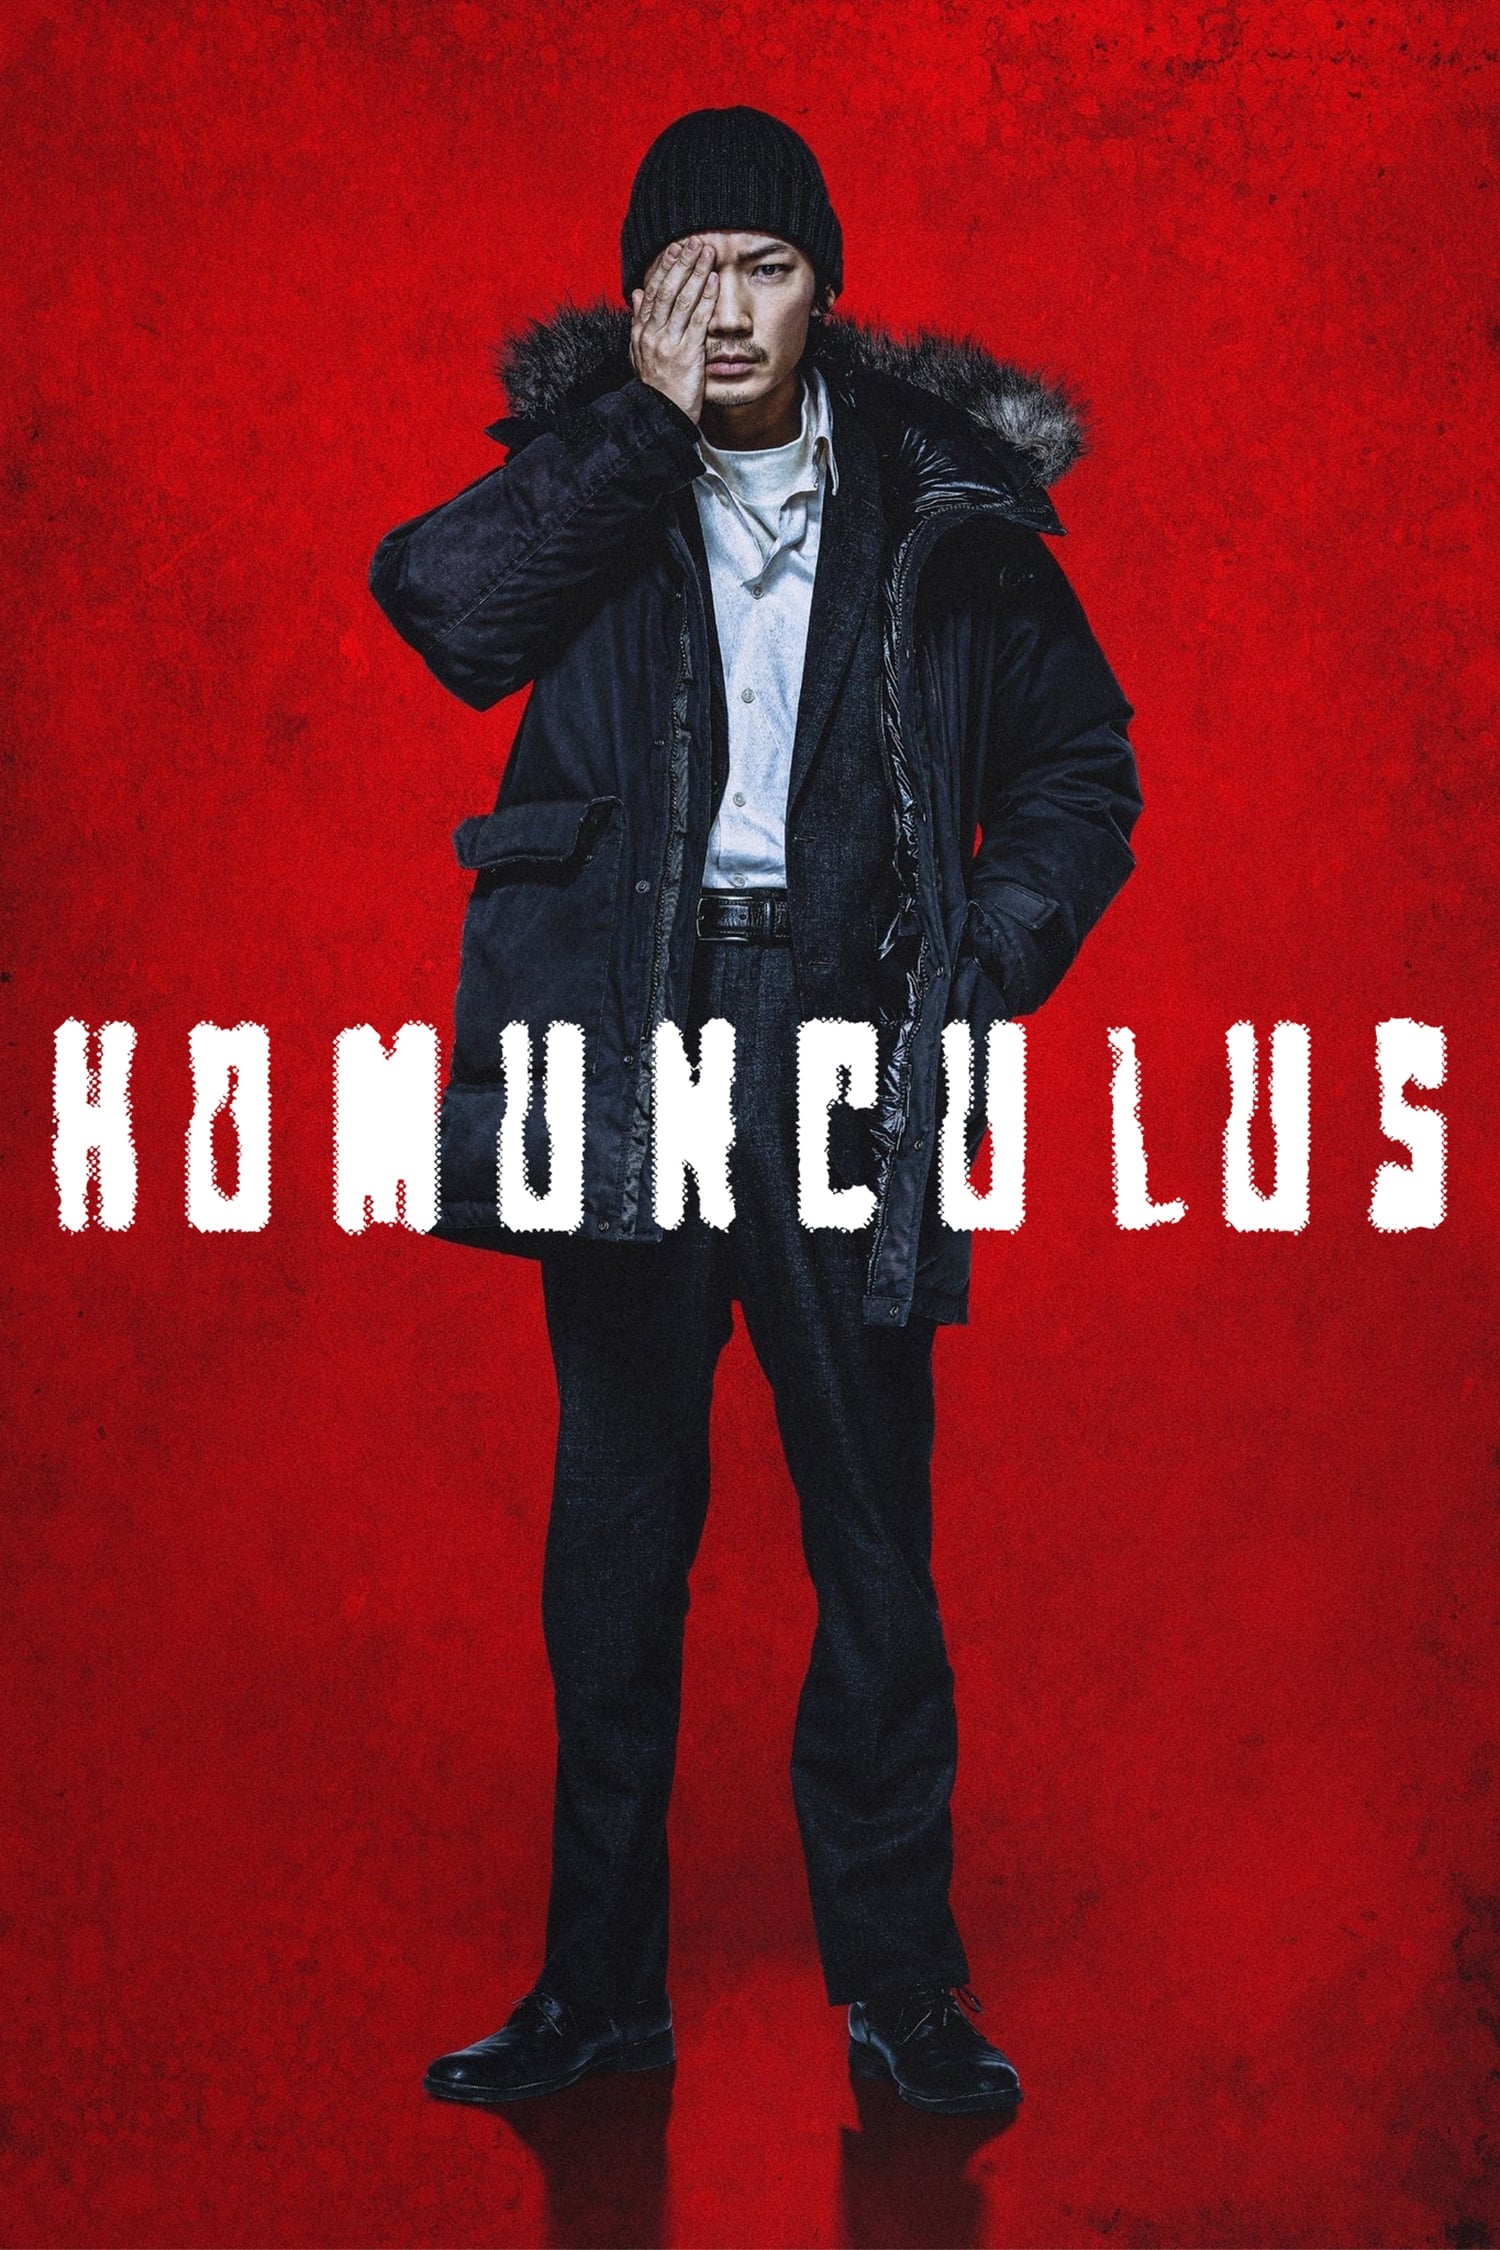 ดูหนังออนไลน์ฟรี Homunculus ฮามังคิวลัส